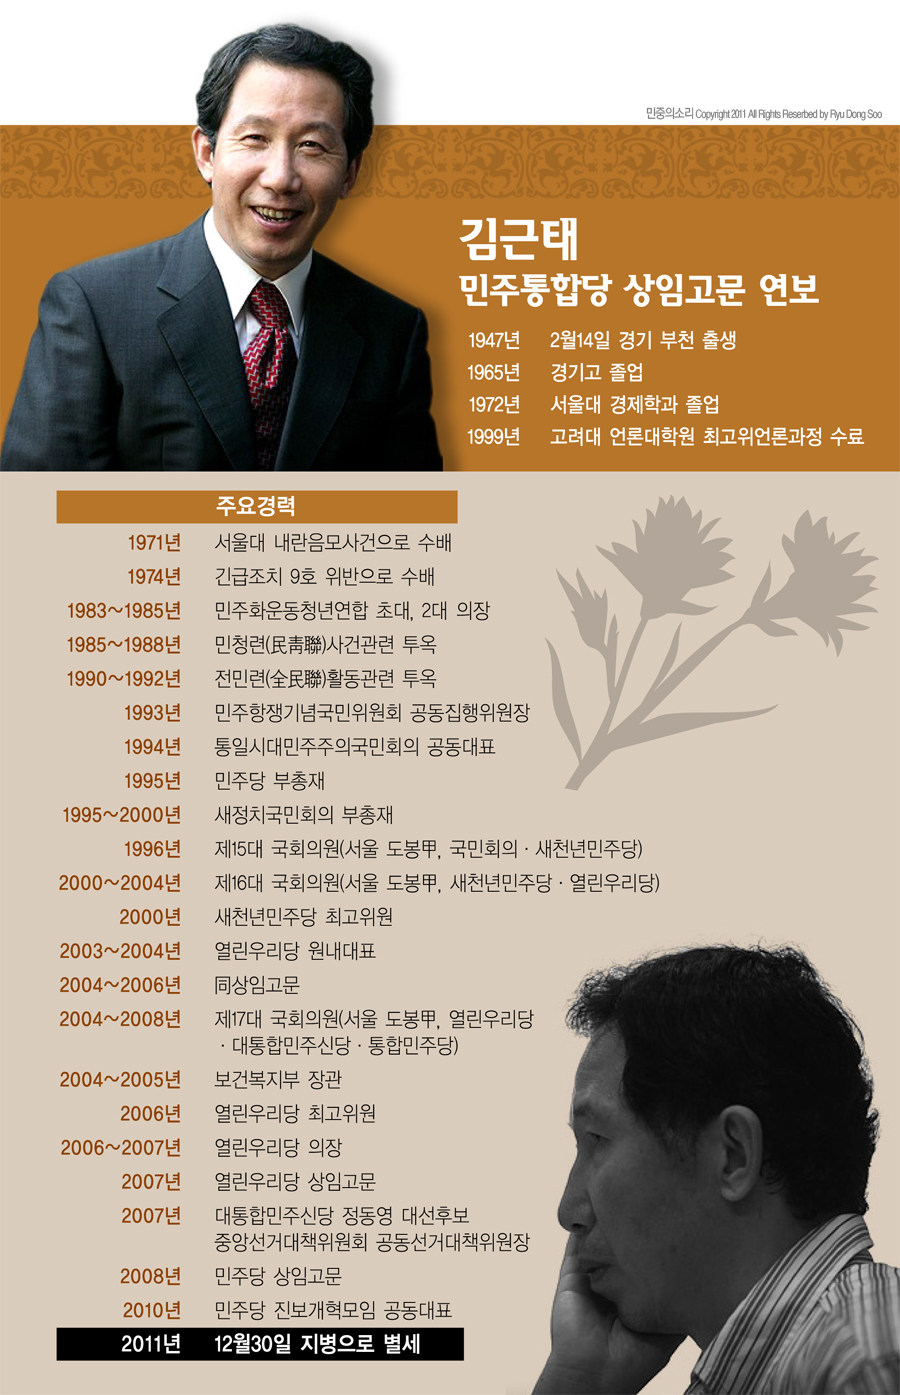 [인포그래픽] 김근태 민주통합당 상임고문 연보